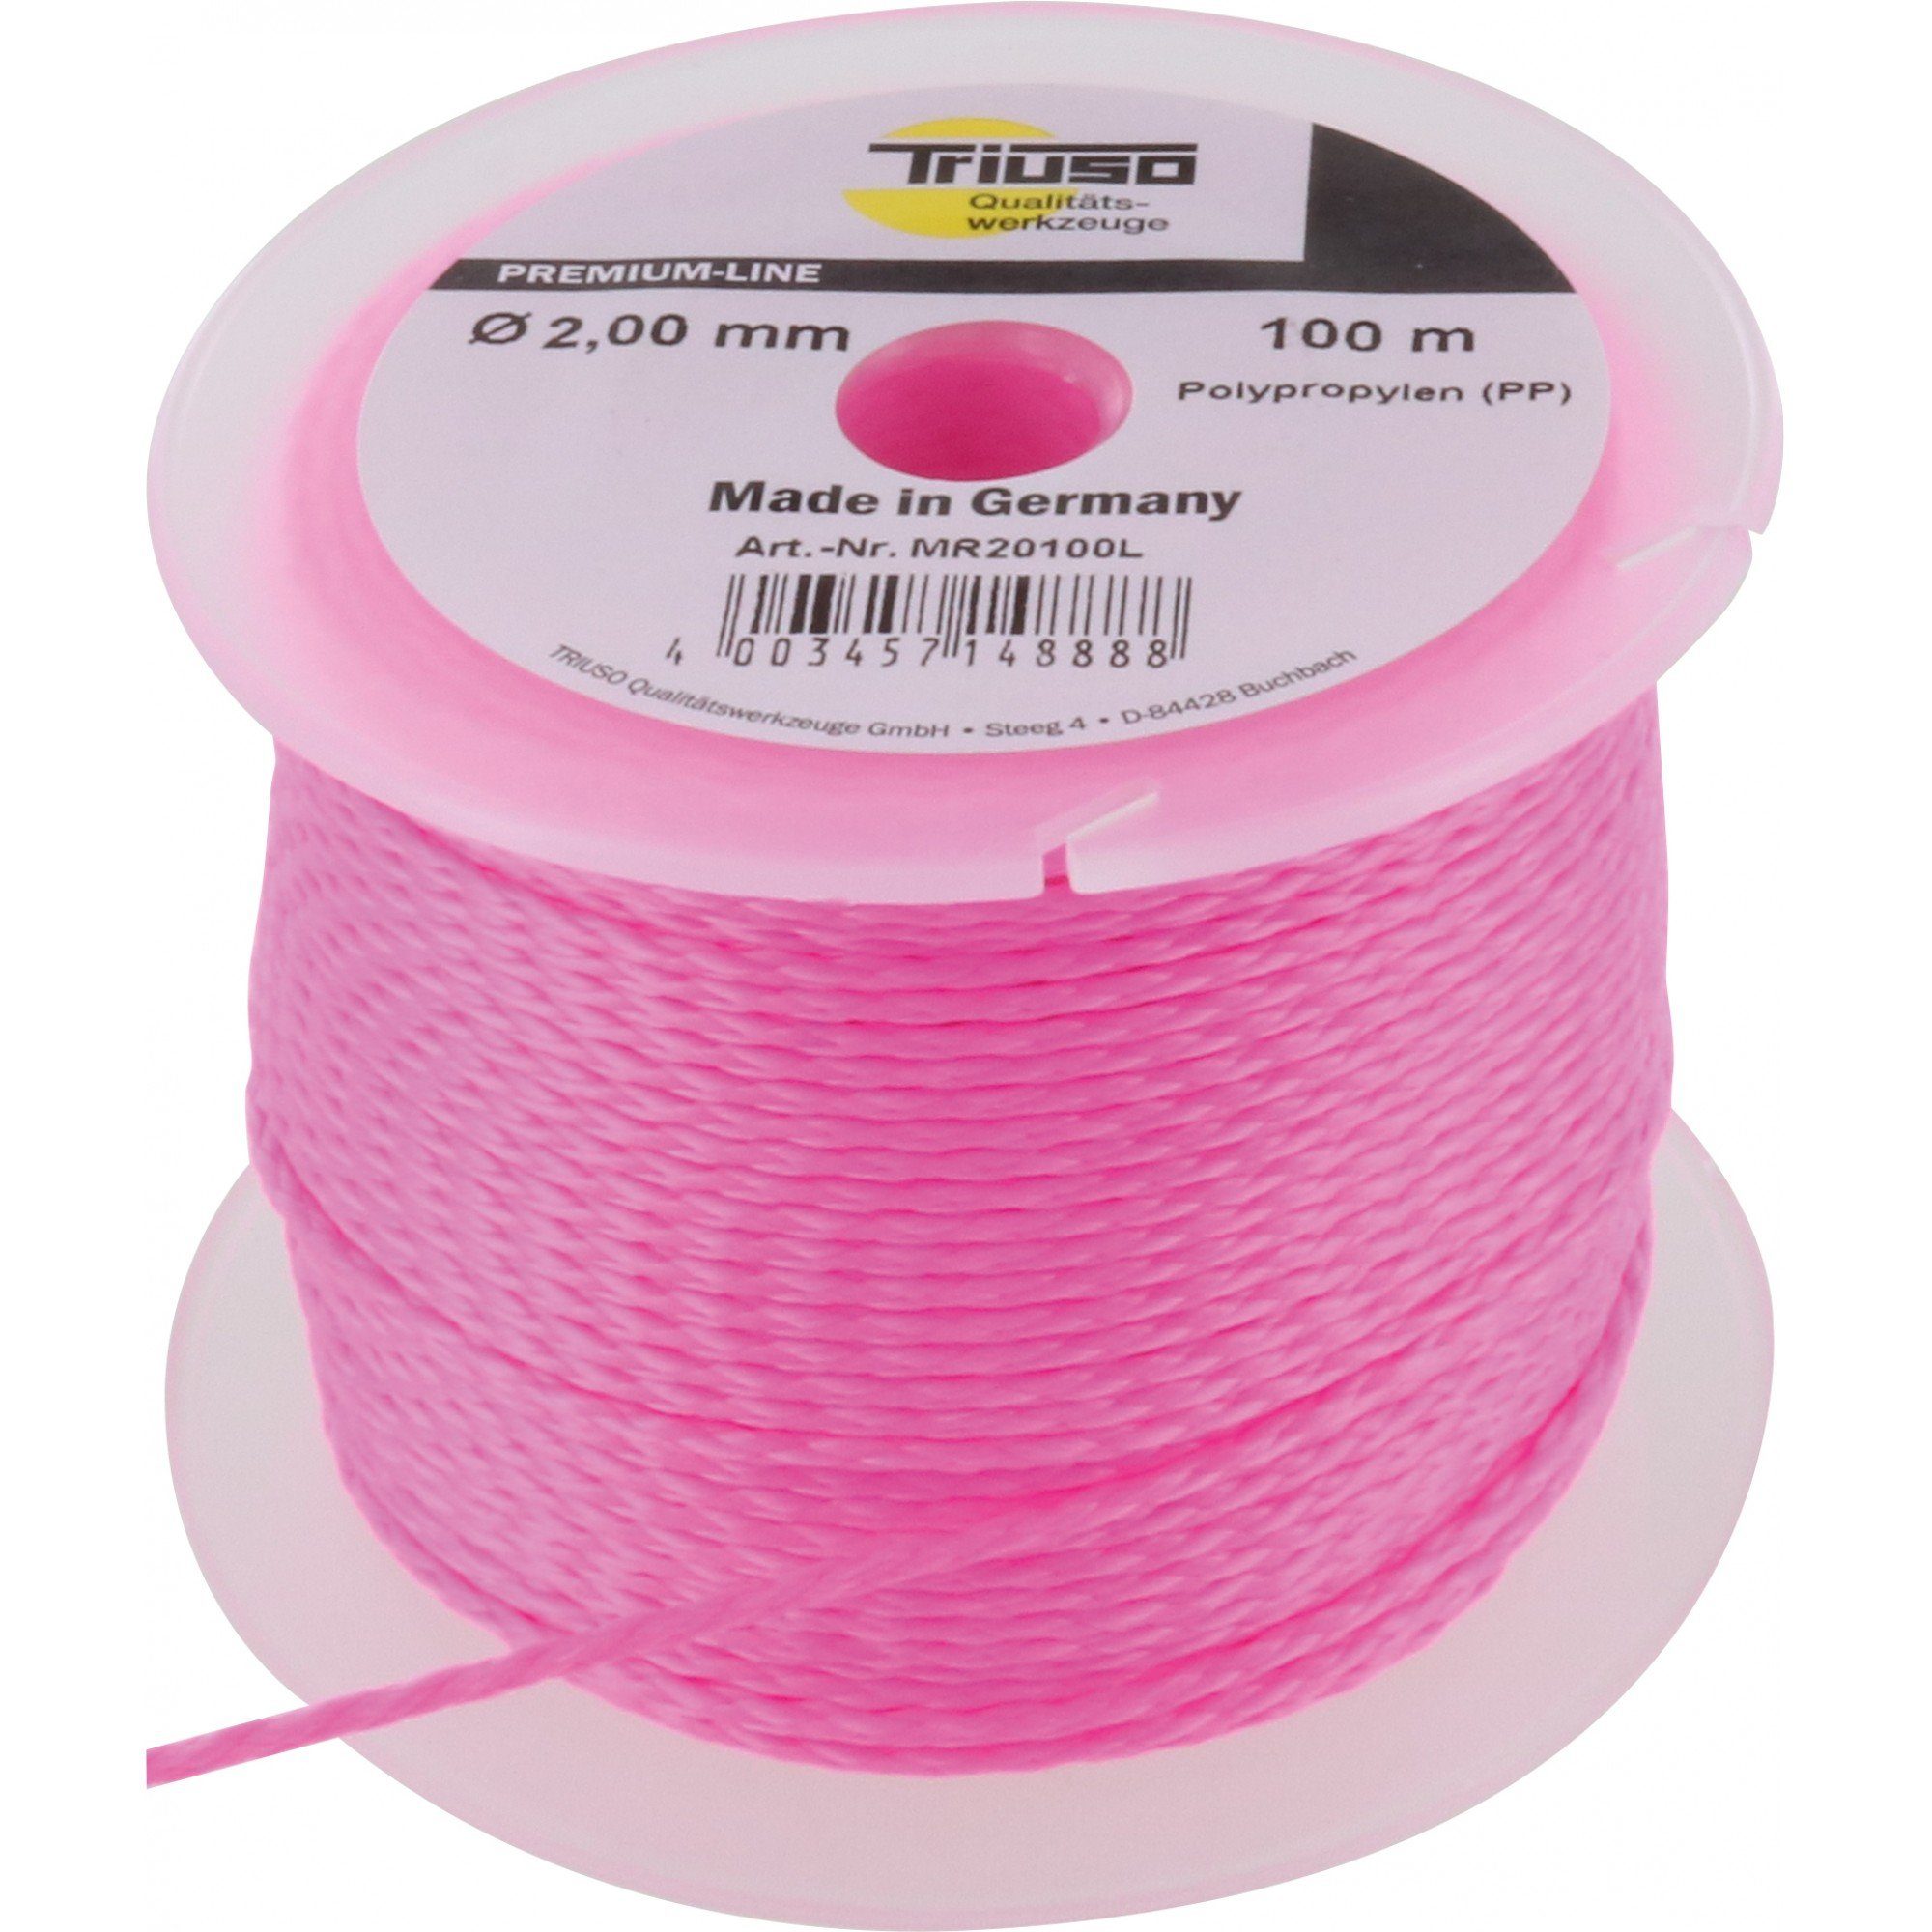 Triuso Schlagschnur Polypropylen Leucht-Maurerschnur Verlegeschnur pink 100m Ø1,7mm, besonders reißfest, flexibel, spannbar, pink fluoreszierend